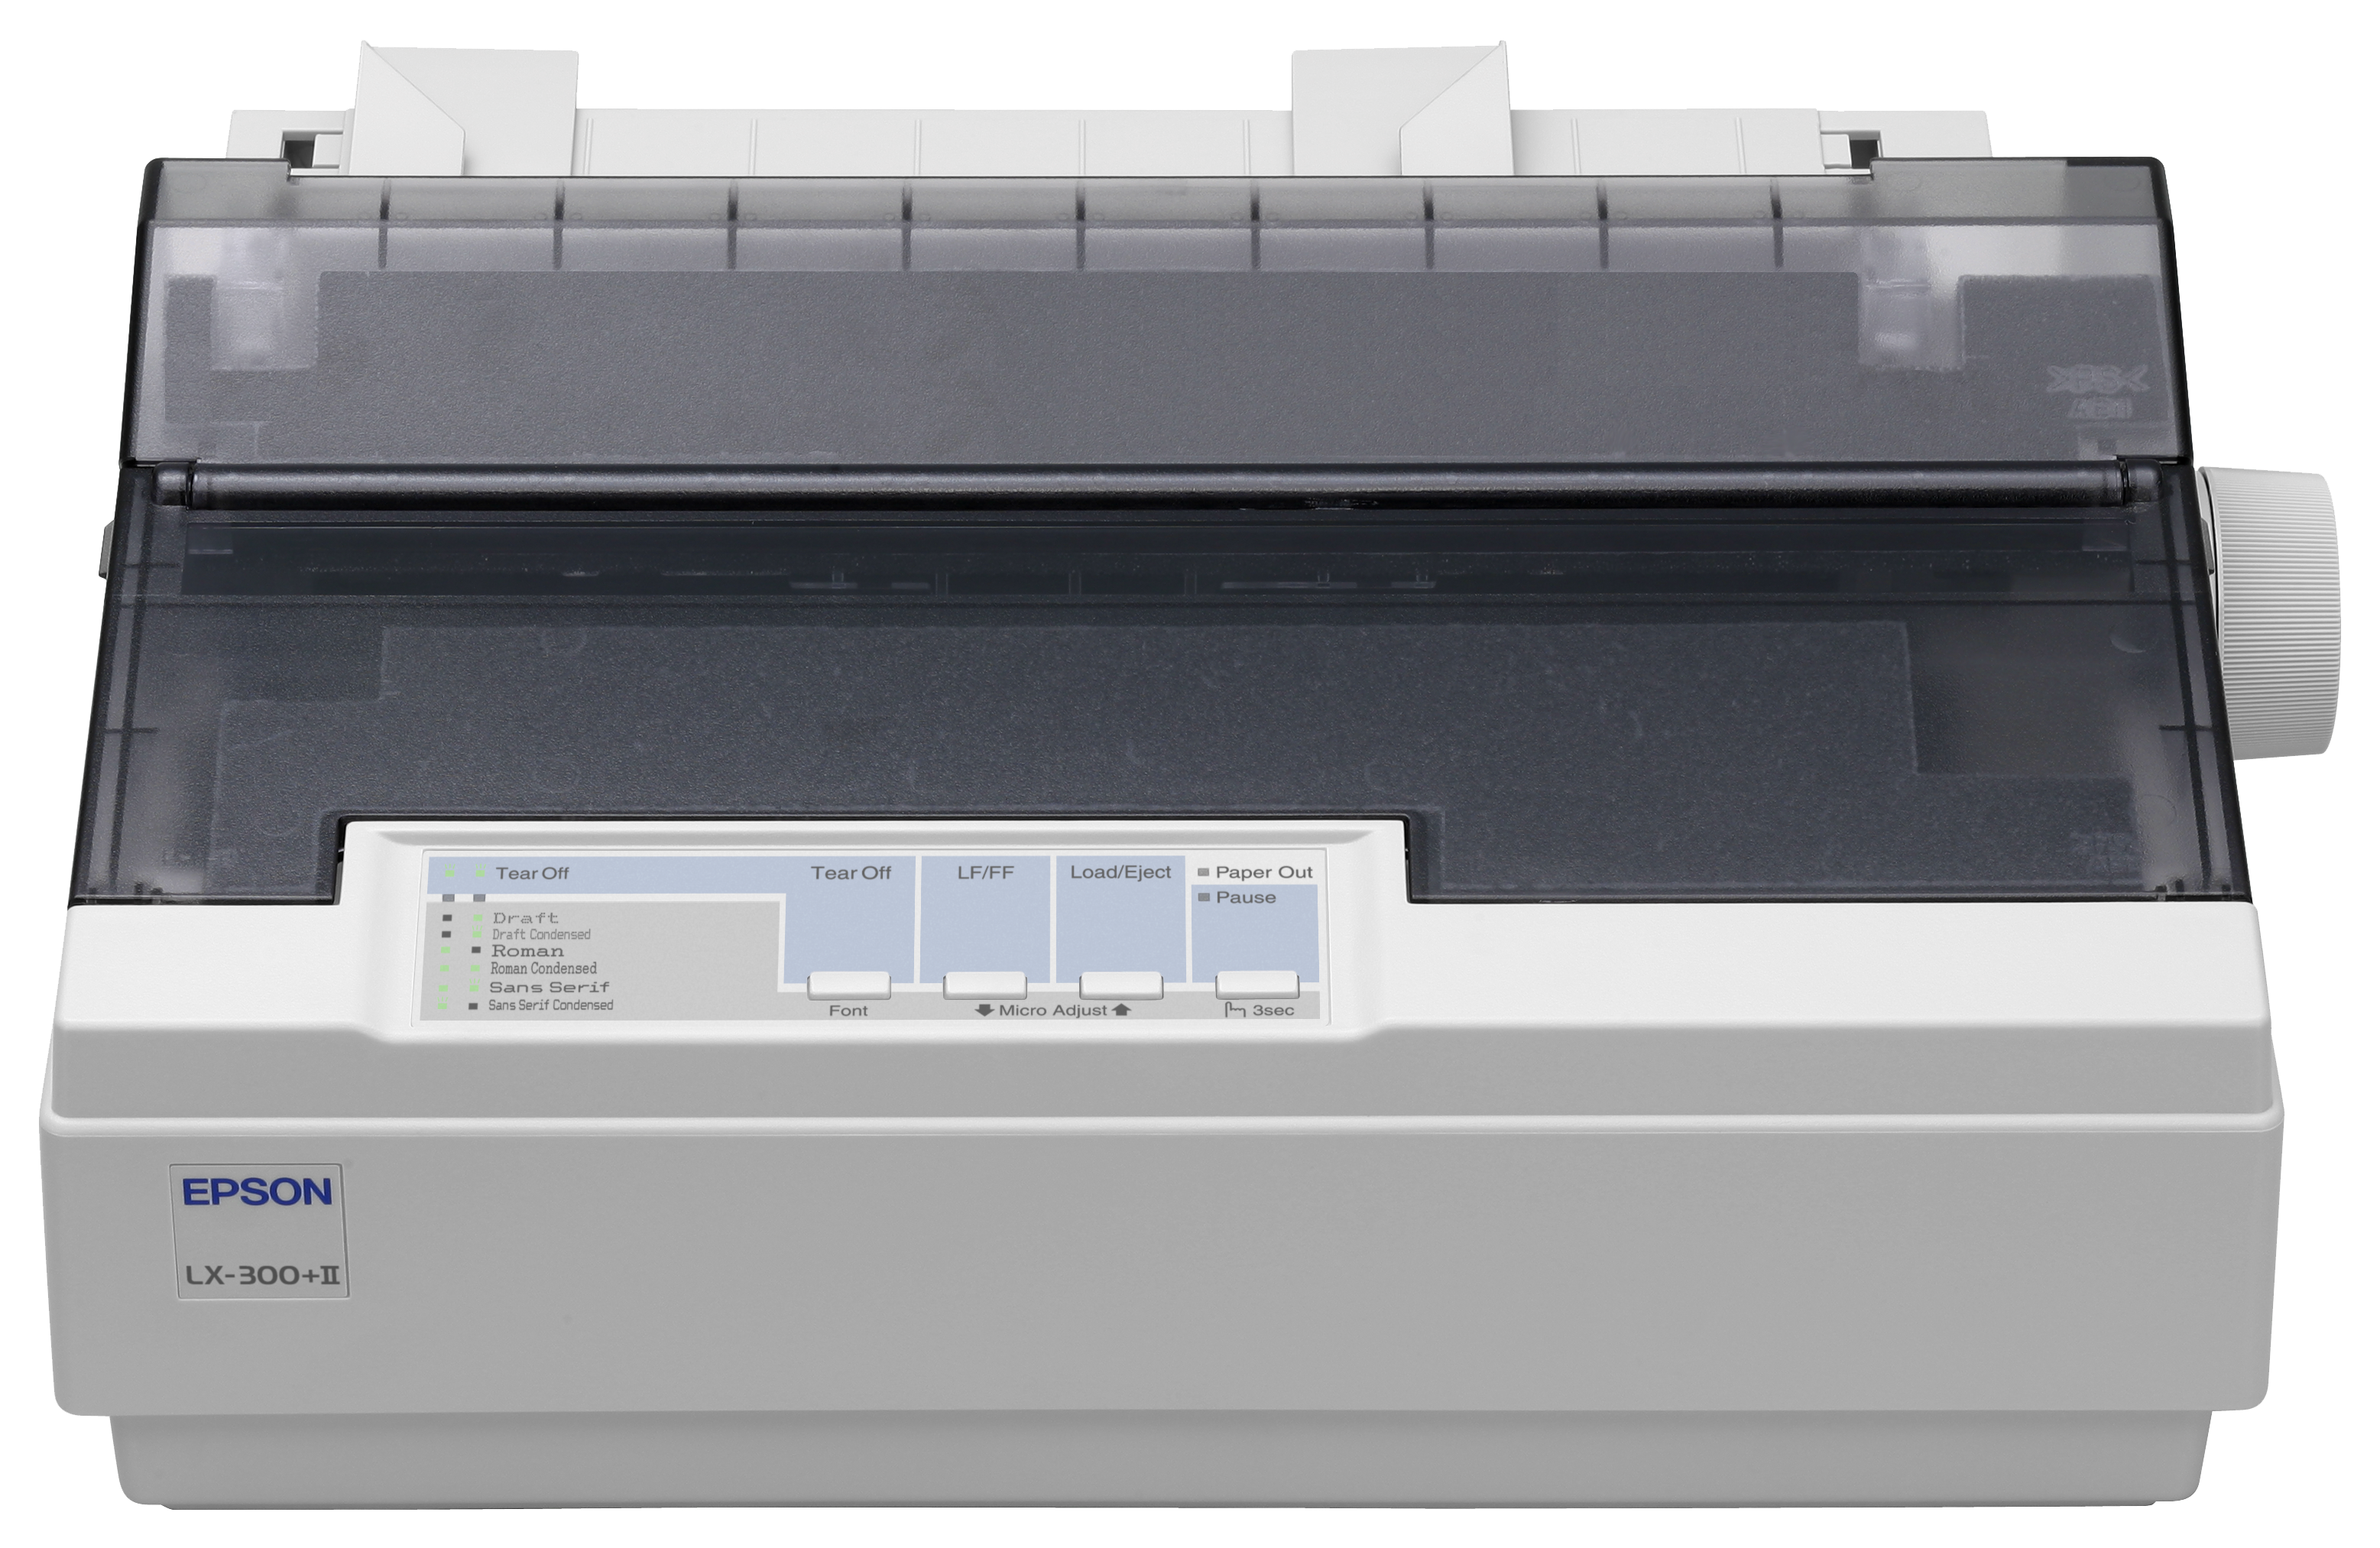 Матричный принтер epson lx. Epson LX-300+II. Эпсон принтер lx300 +. Принтер Epson LX-300. Матричный принтер Эпсон LX 300.